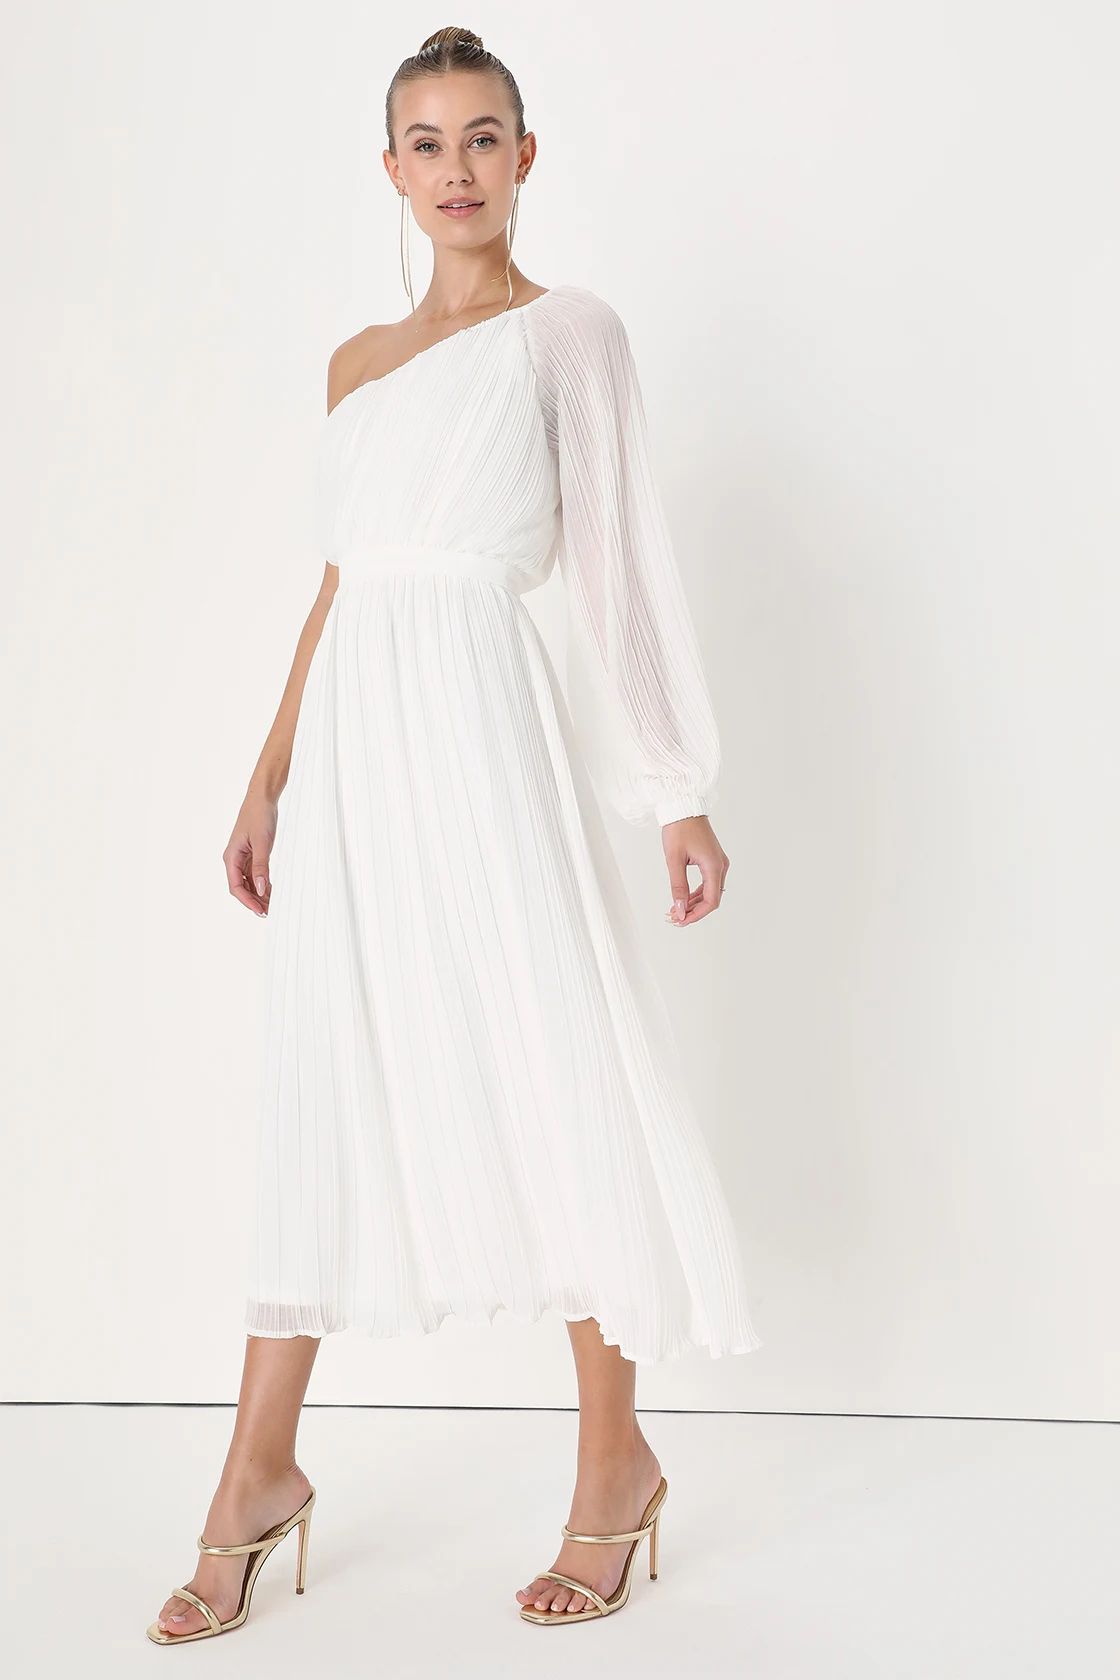 Always Loving You White Pleated One-Shoulder Midi Dress | Lulus (US)